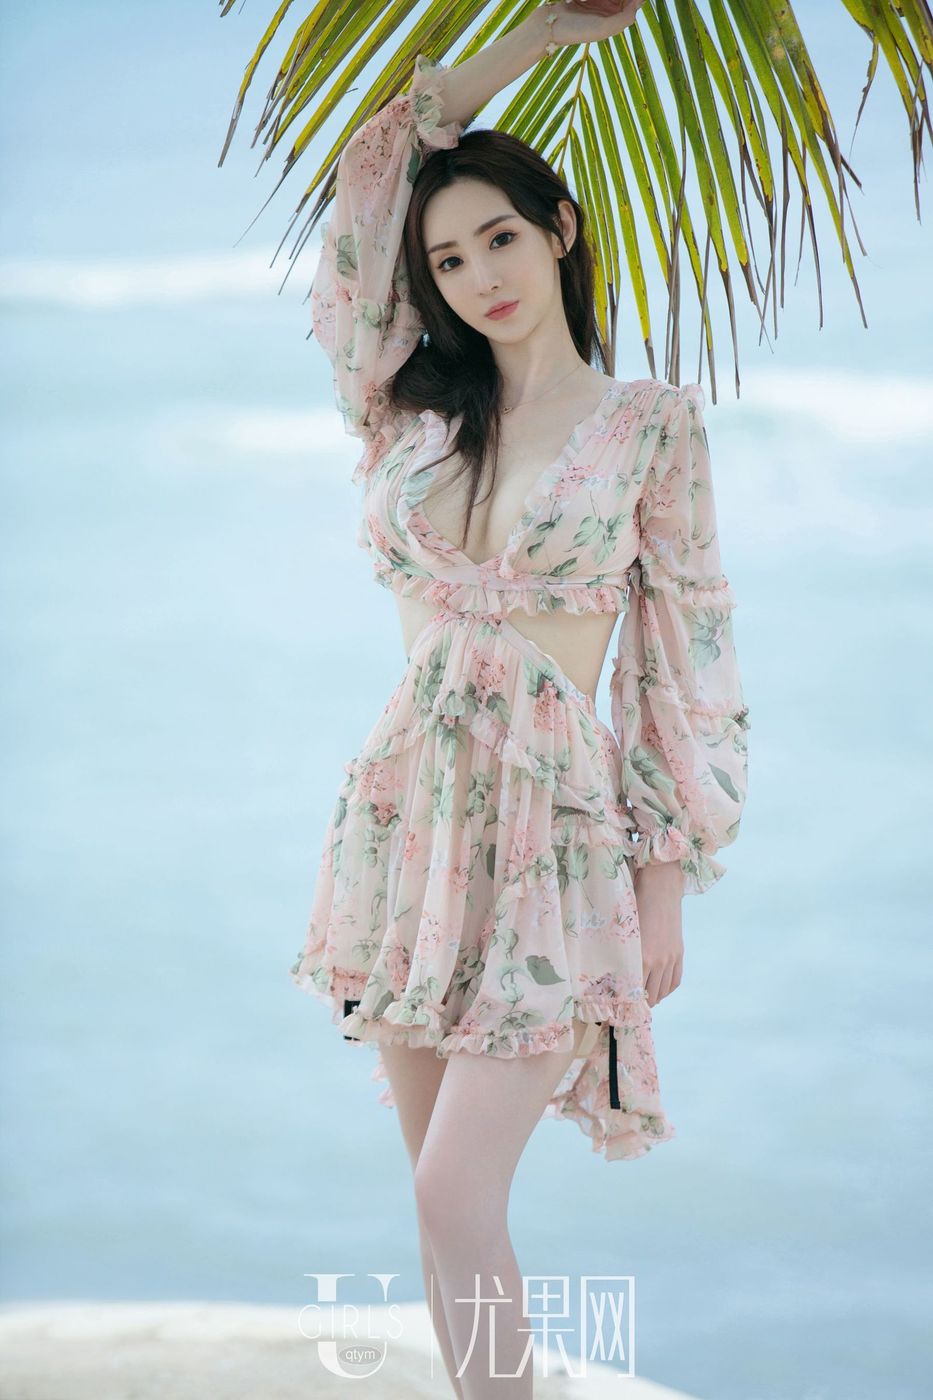 尤果网美女模特于思琪坚挺美胸沙滩比基尼内衣诱惑套图